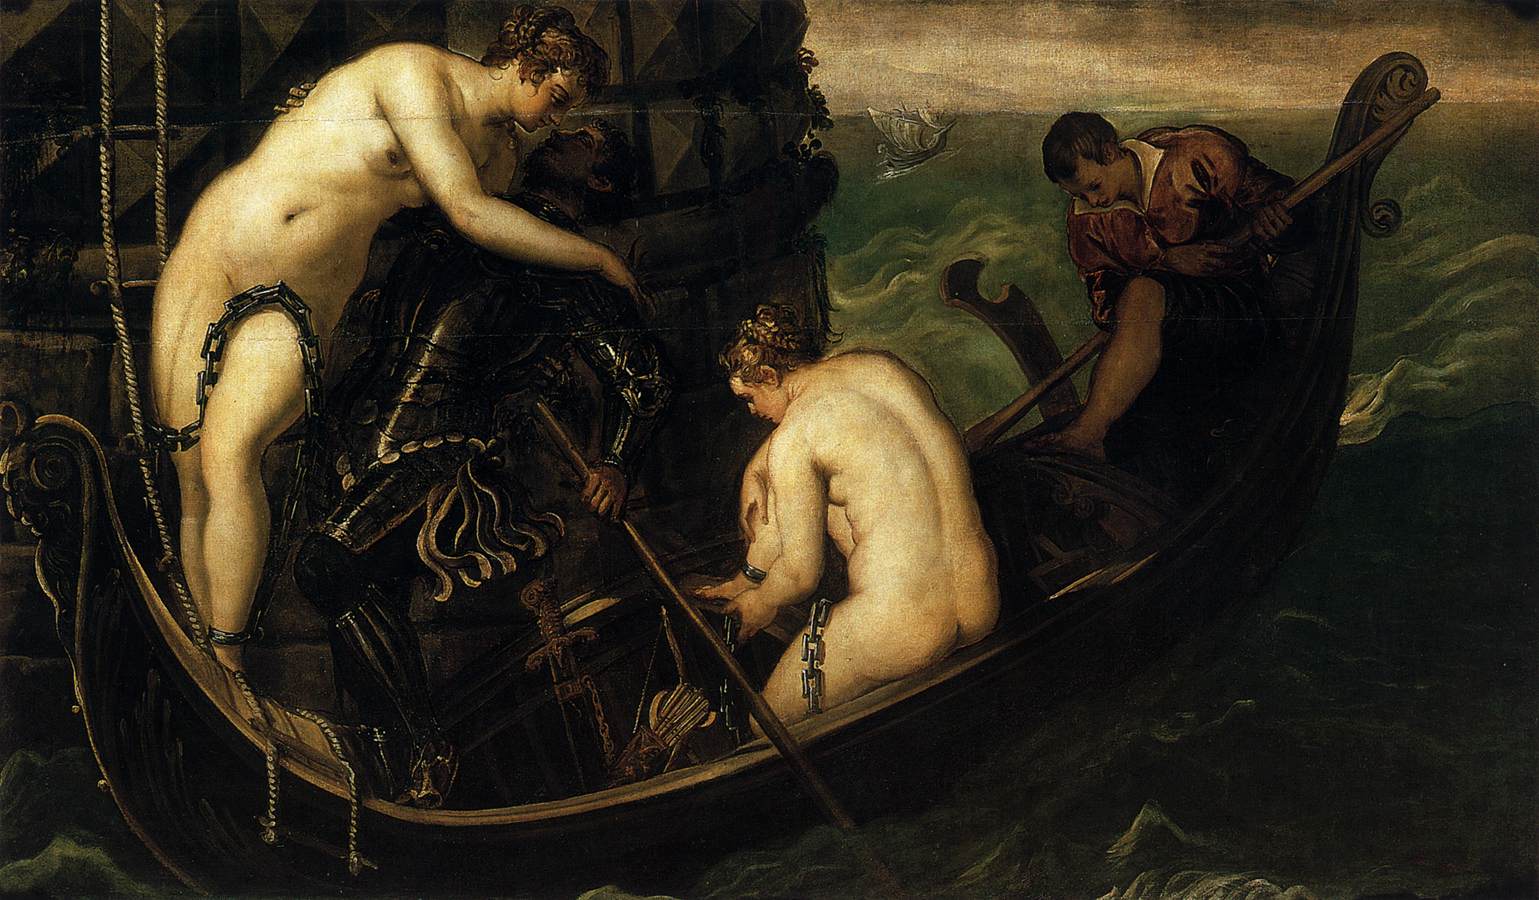 La liberazione di Arsinoe  by Jacopo Comin - 1556 - 153 x 251 cm  